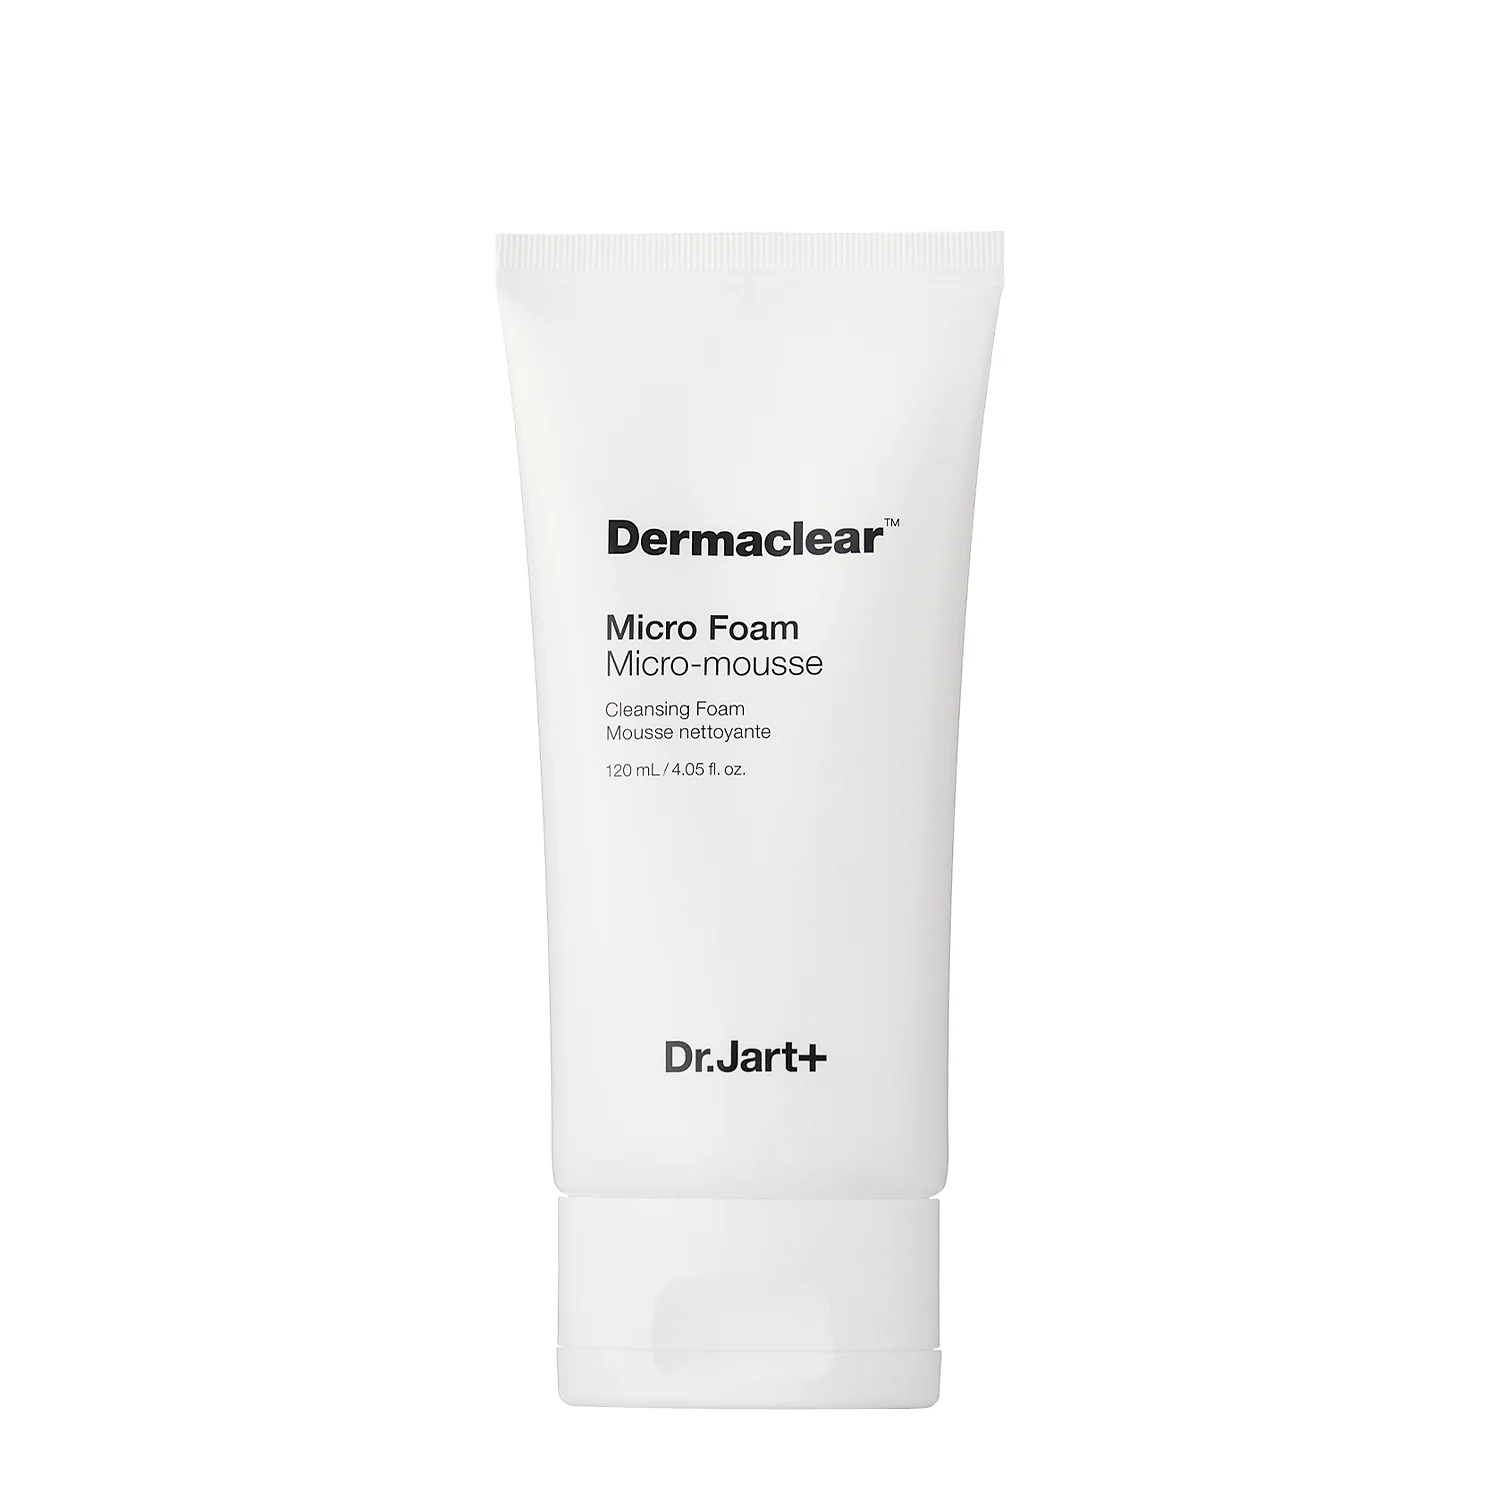 Dr. Jart+ - Dermaclear Micro Foam Cleanser - 120ml